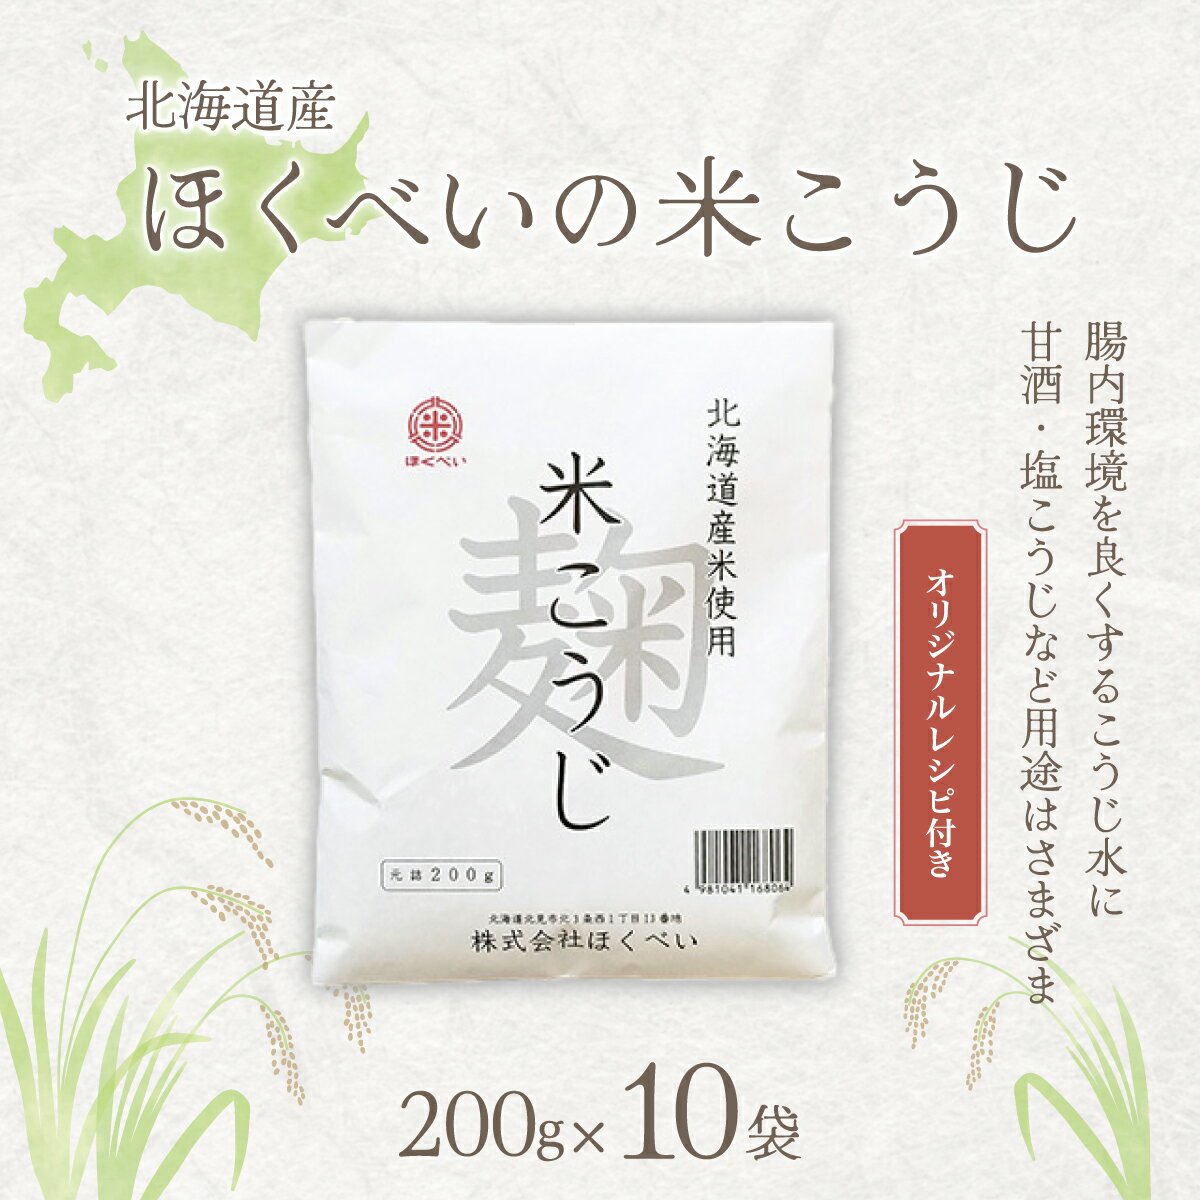 【ふるさと納税】北海道産 ほくべいの米こうじ 200g×10